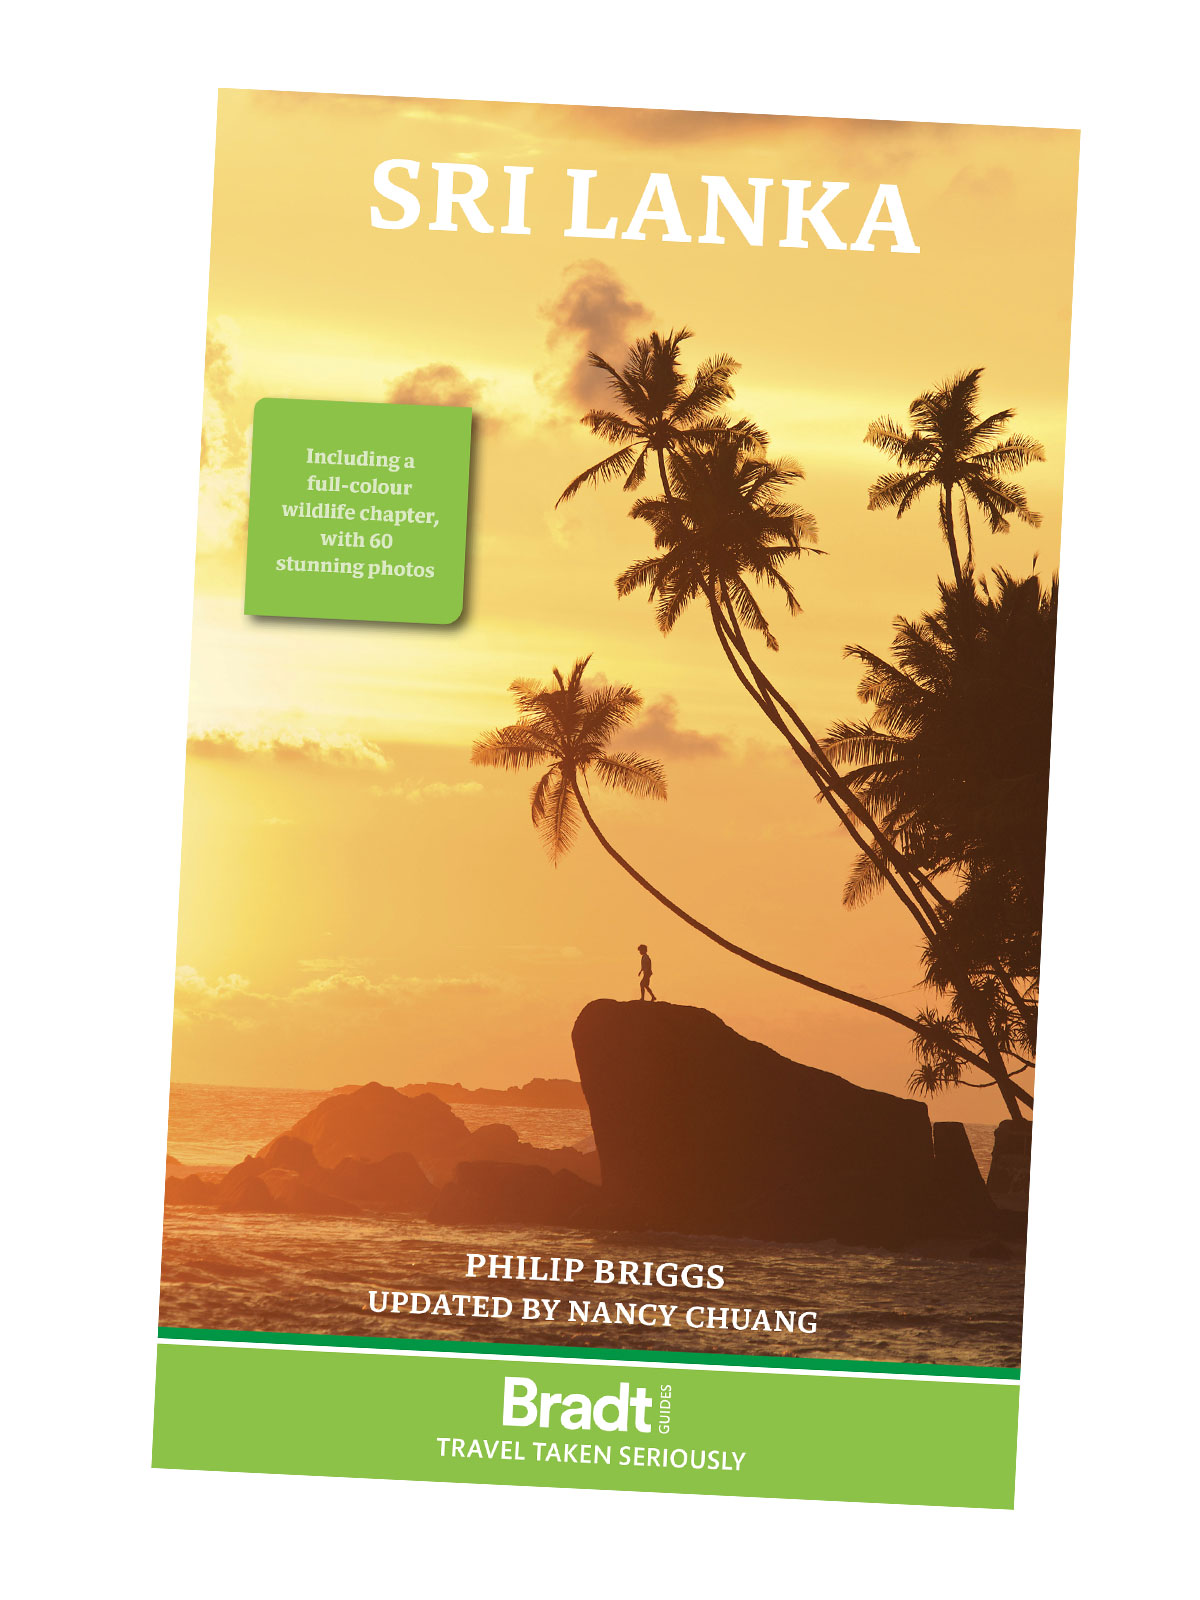 Sri Lanka reiseguide